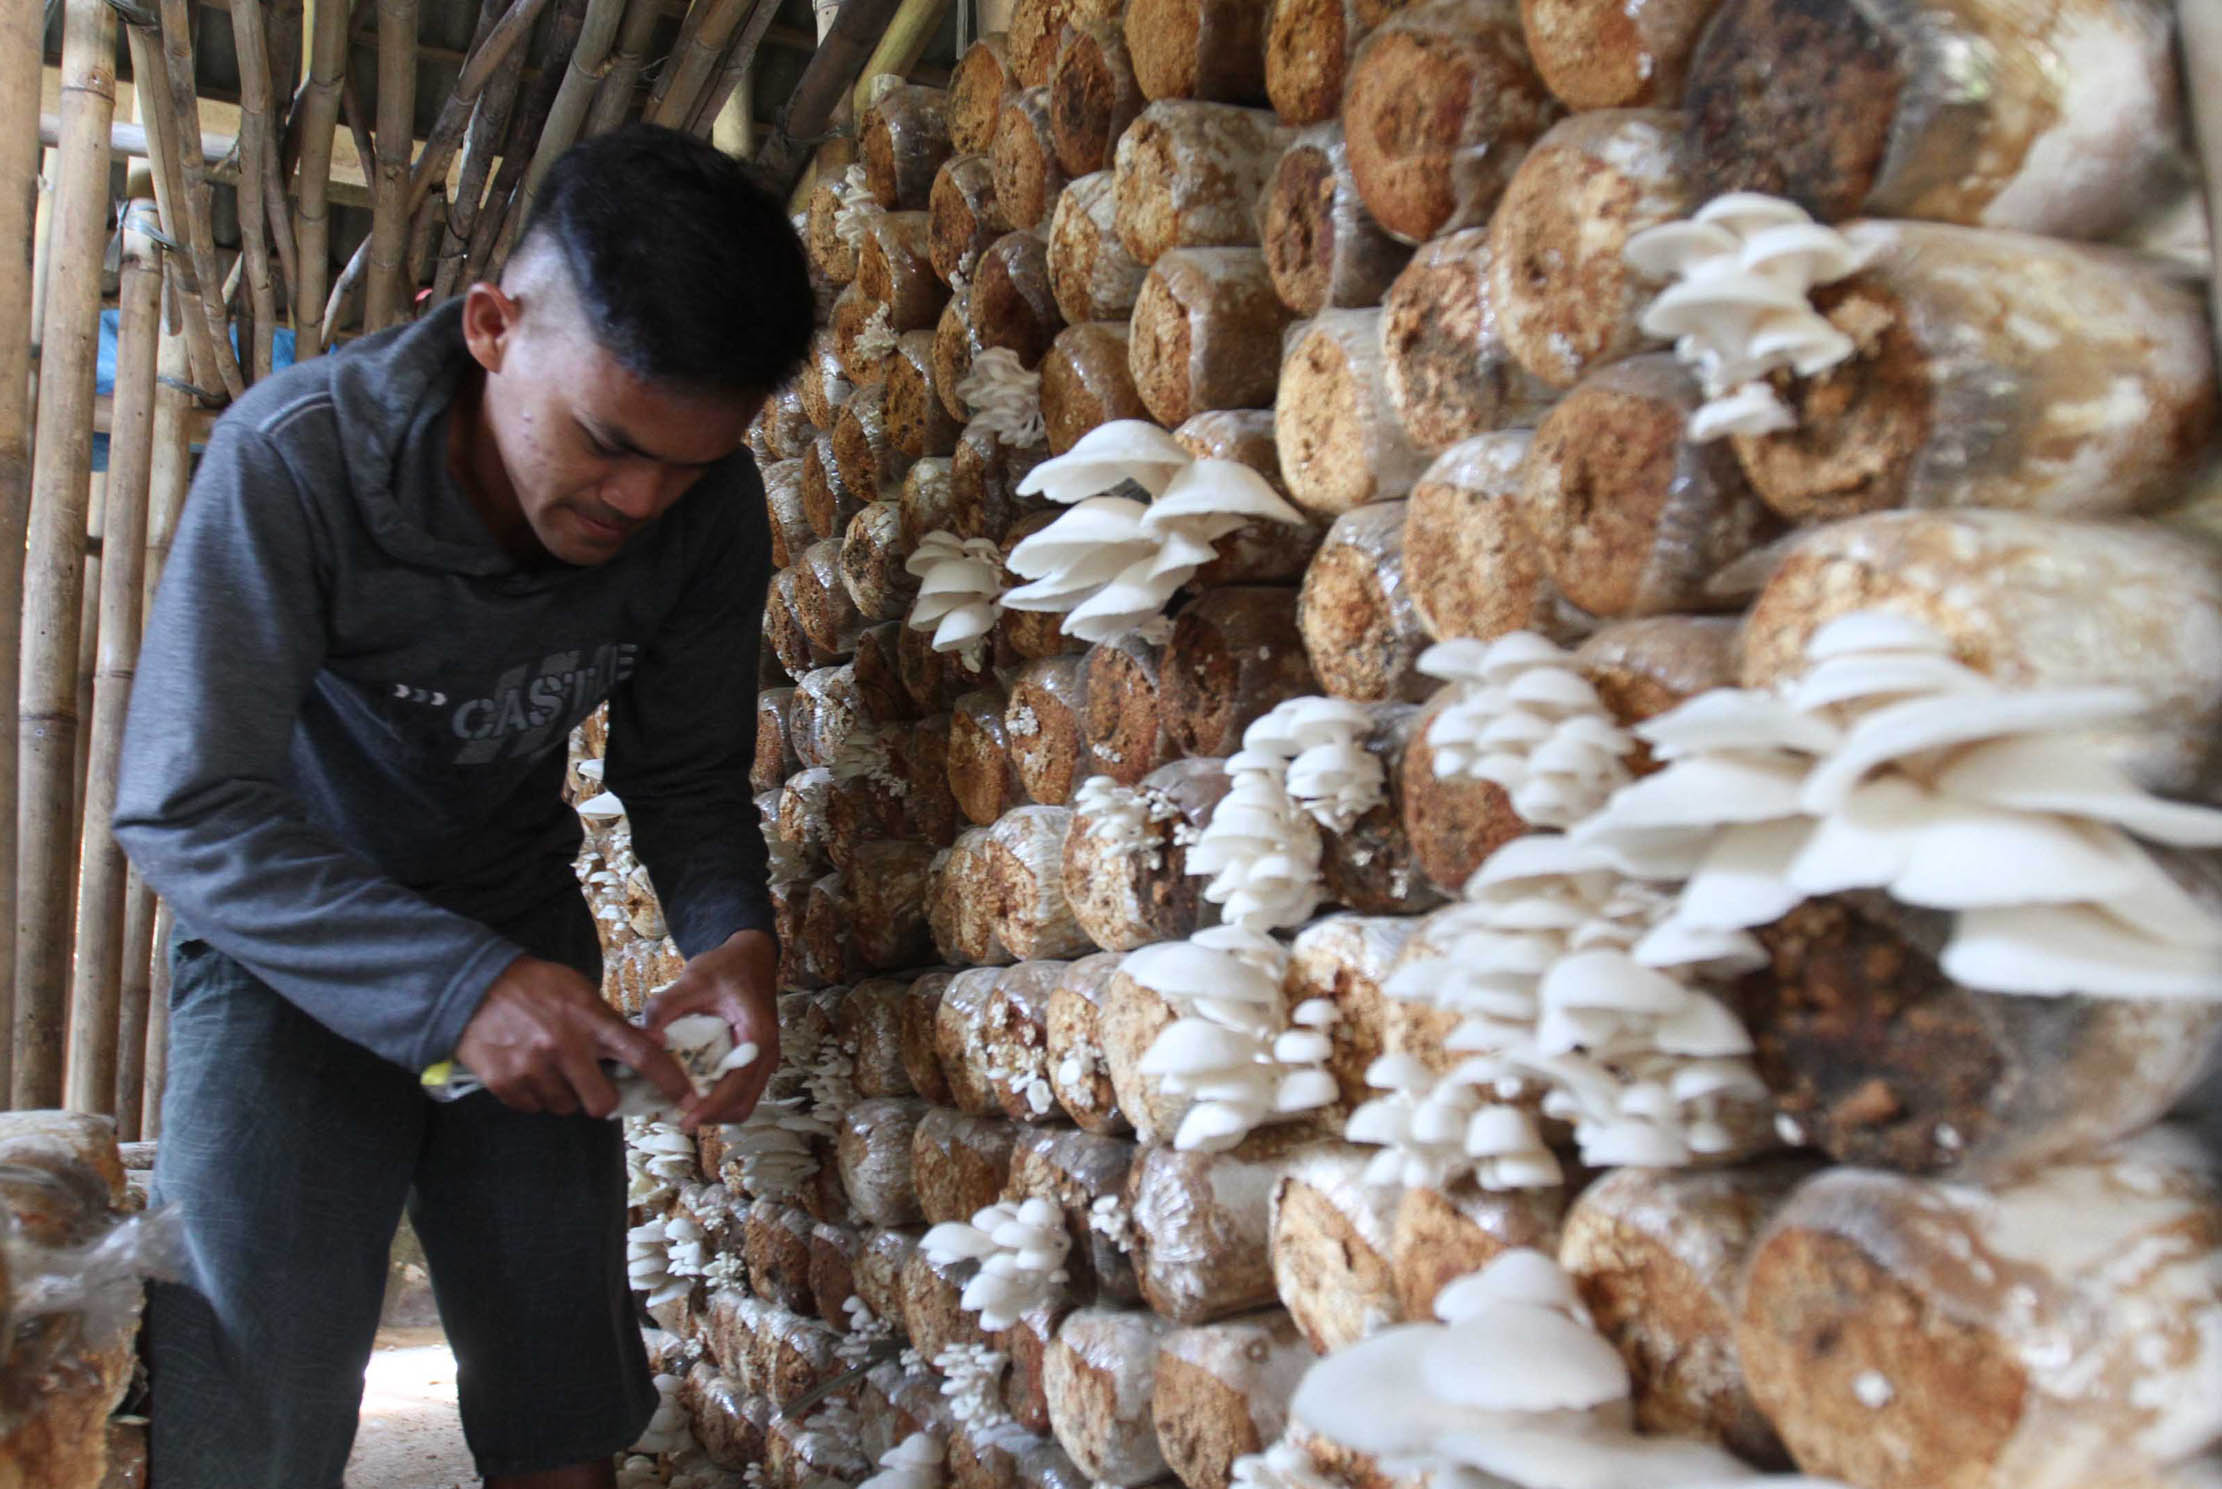 Nampak aktifitas petani tengah memanen dan memeriksa tempat budidaya jamur tiram di kawasan Pamijahan, Bogor, Jawa Barat. Senin 30 Agustus 2021. Foto : Panji Asmoro/TrenAsia